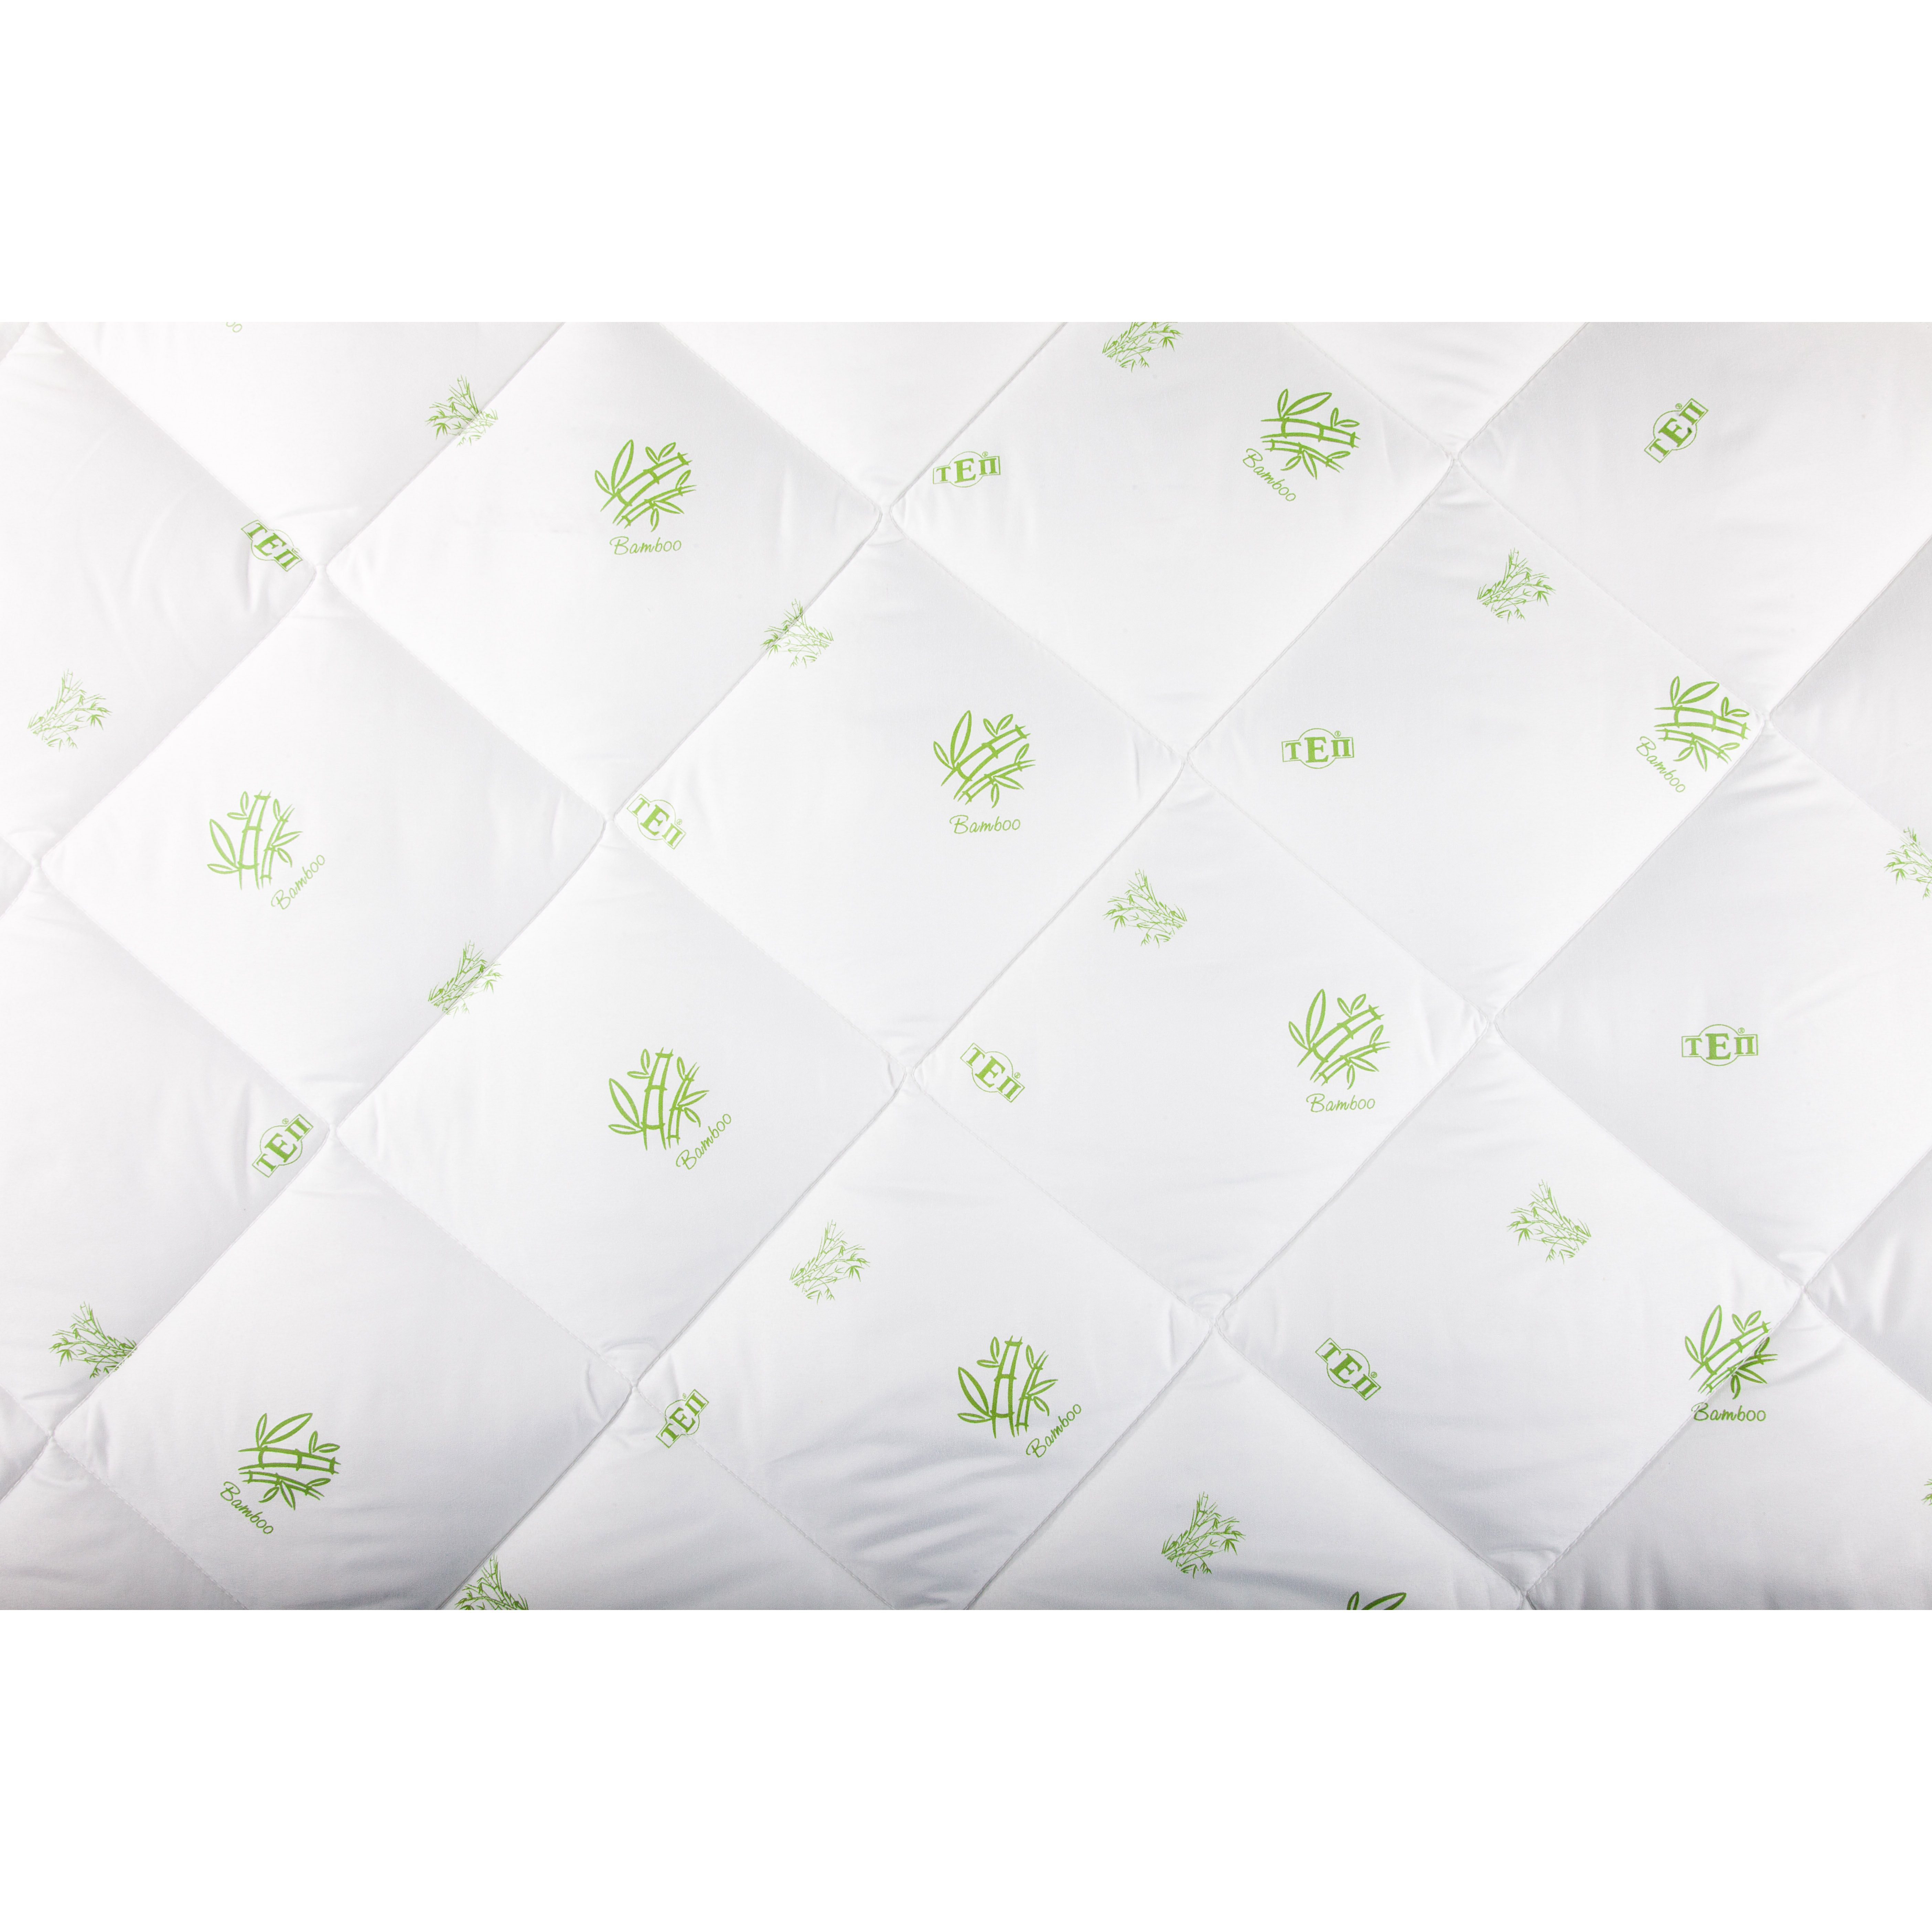 Одеяло ТЕП Dream Collection Bamboo 200x210 белое (1-03285_22350) - фото 4